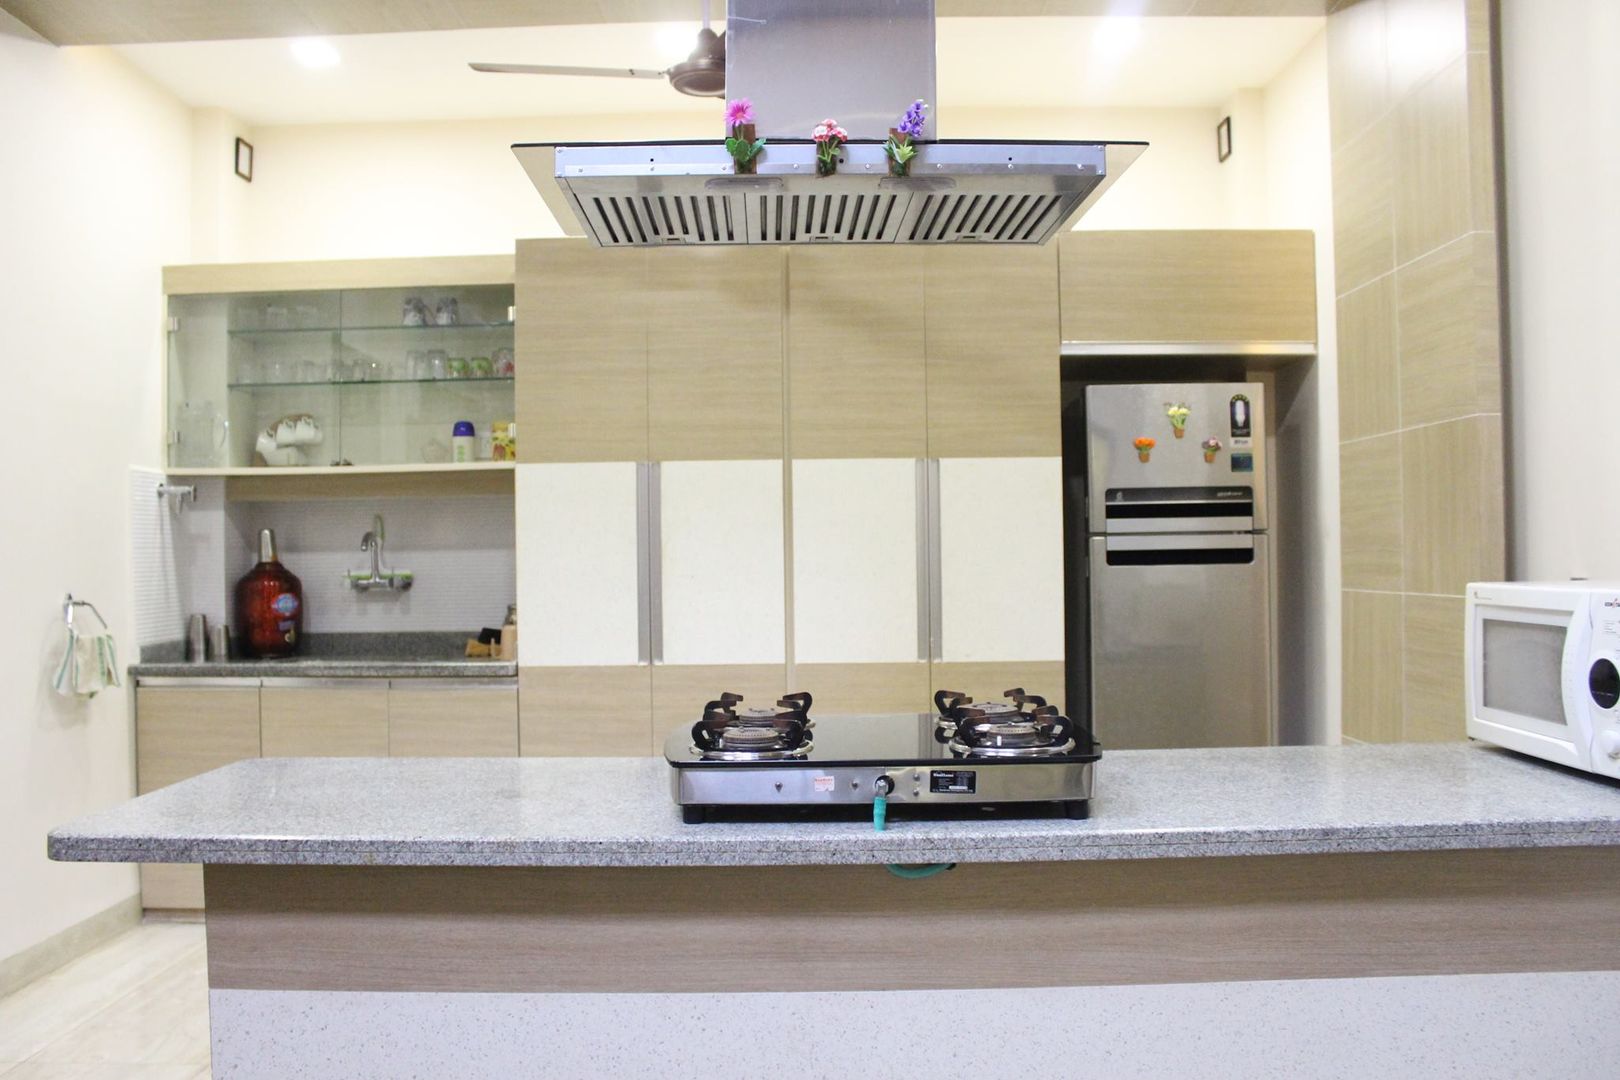 Duplex in Indore, Shadab Anwari & Associates. Shadab Anwari & Associates. Aziatische keukens